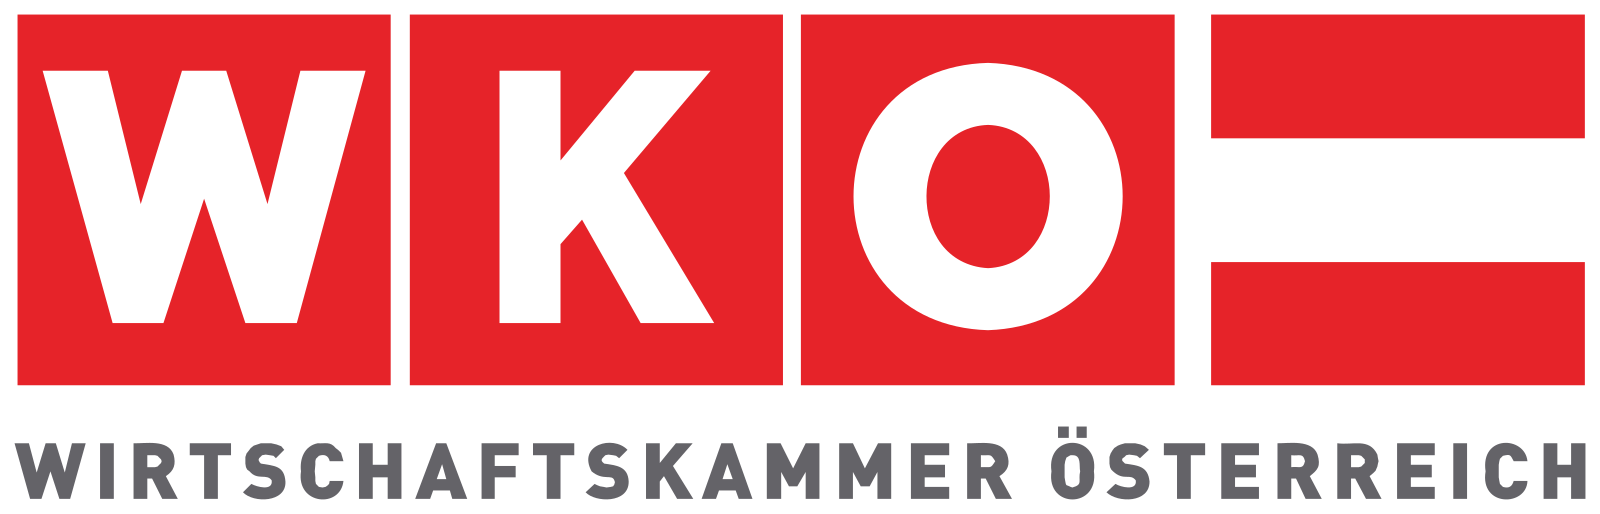 WIRTSCHAFTSKAMMER OSTERREICH (WKO)